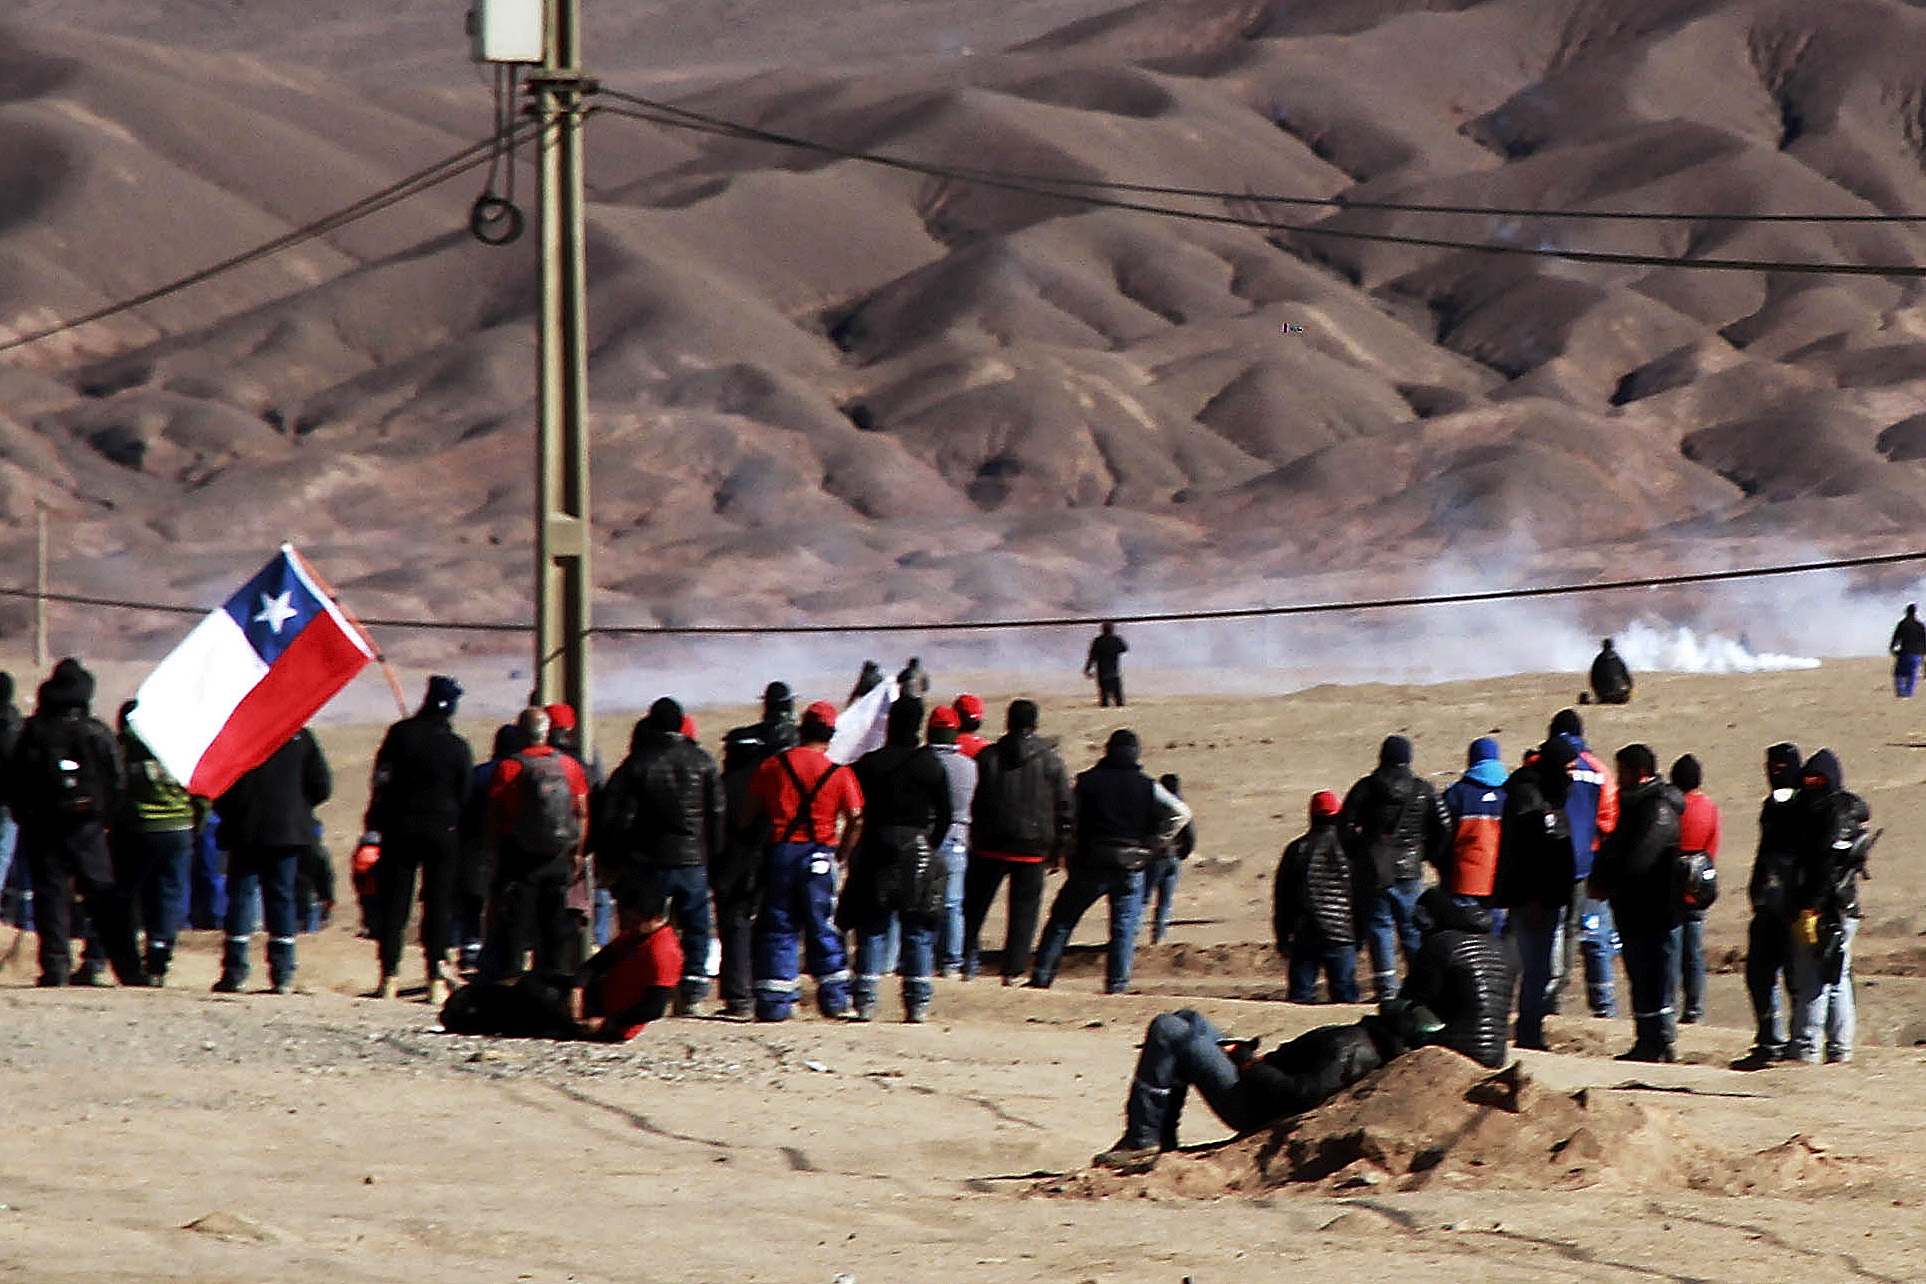 Antofagasta 1 Marzo 2017
Trabajadores de Minera Escondida protestan en la ruta 5, sector la negra.
Carlos Garcia/Aton Chile